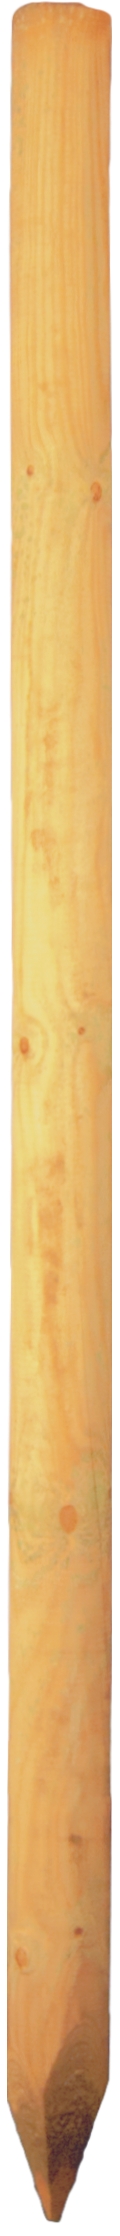 Baumpfahl grün 8 x 175 cm gefräst, gefast, gespitzt